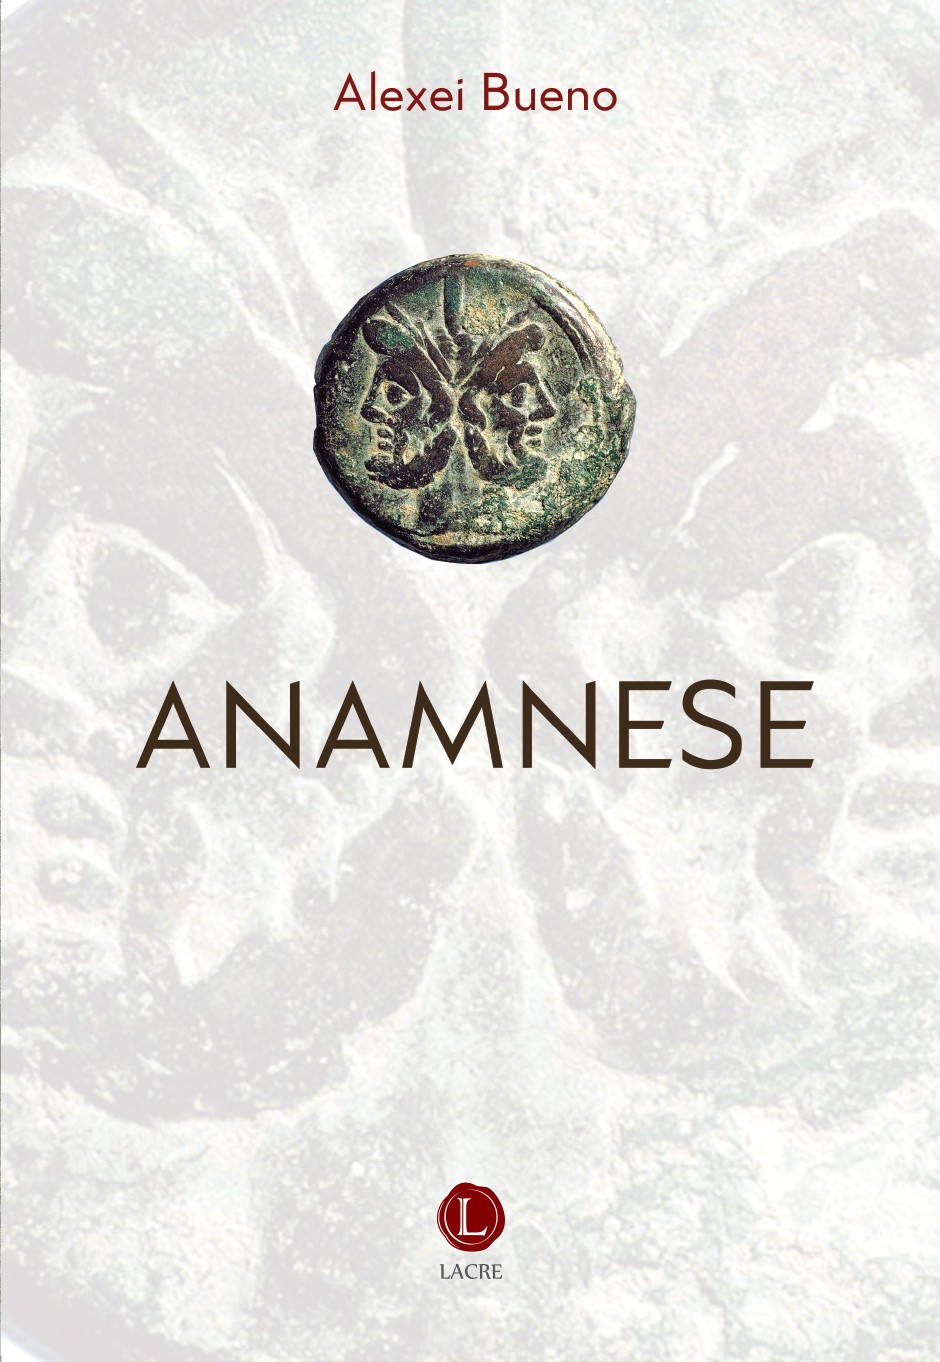 Anamnesis by Carlos Sérgio Rodrigues